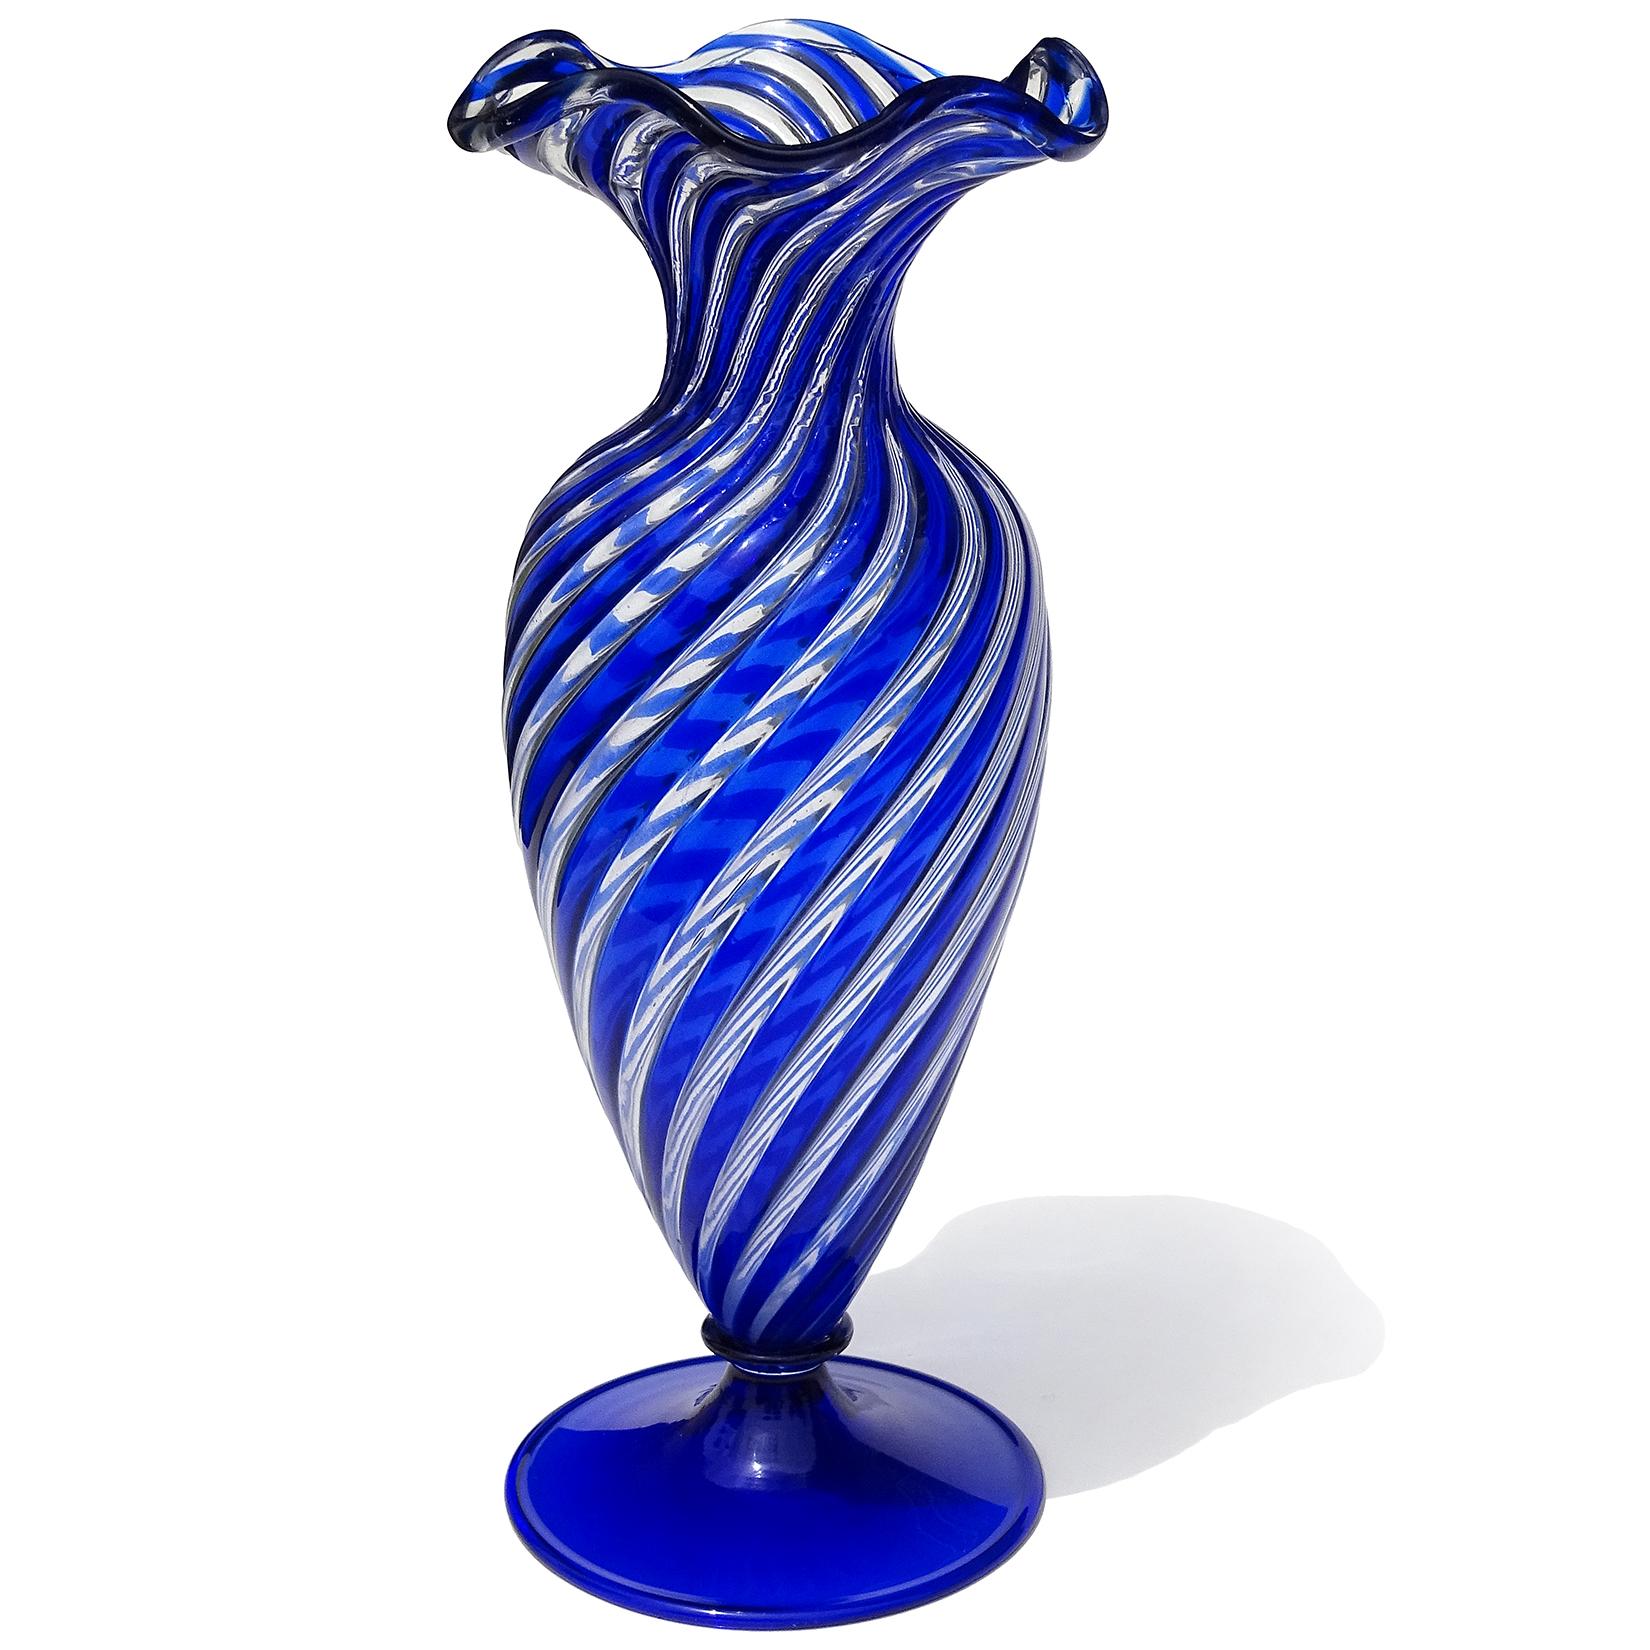 Magnifique vase à pied en verre d'art italien soufflé à la main à Murano, bleu saphir et transparent. Documenté à la société Arte Vetraria Muranese (A.VE.M.). Le vase est créé selon la technique 